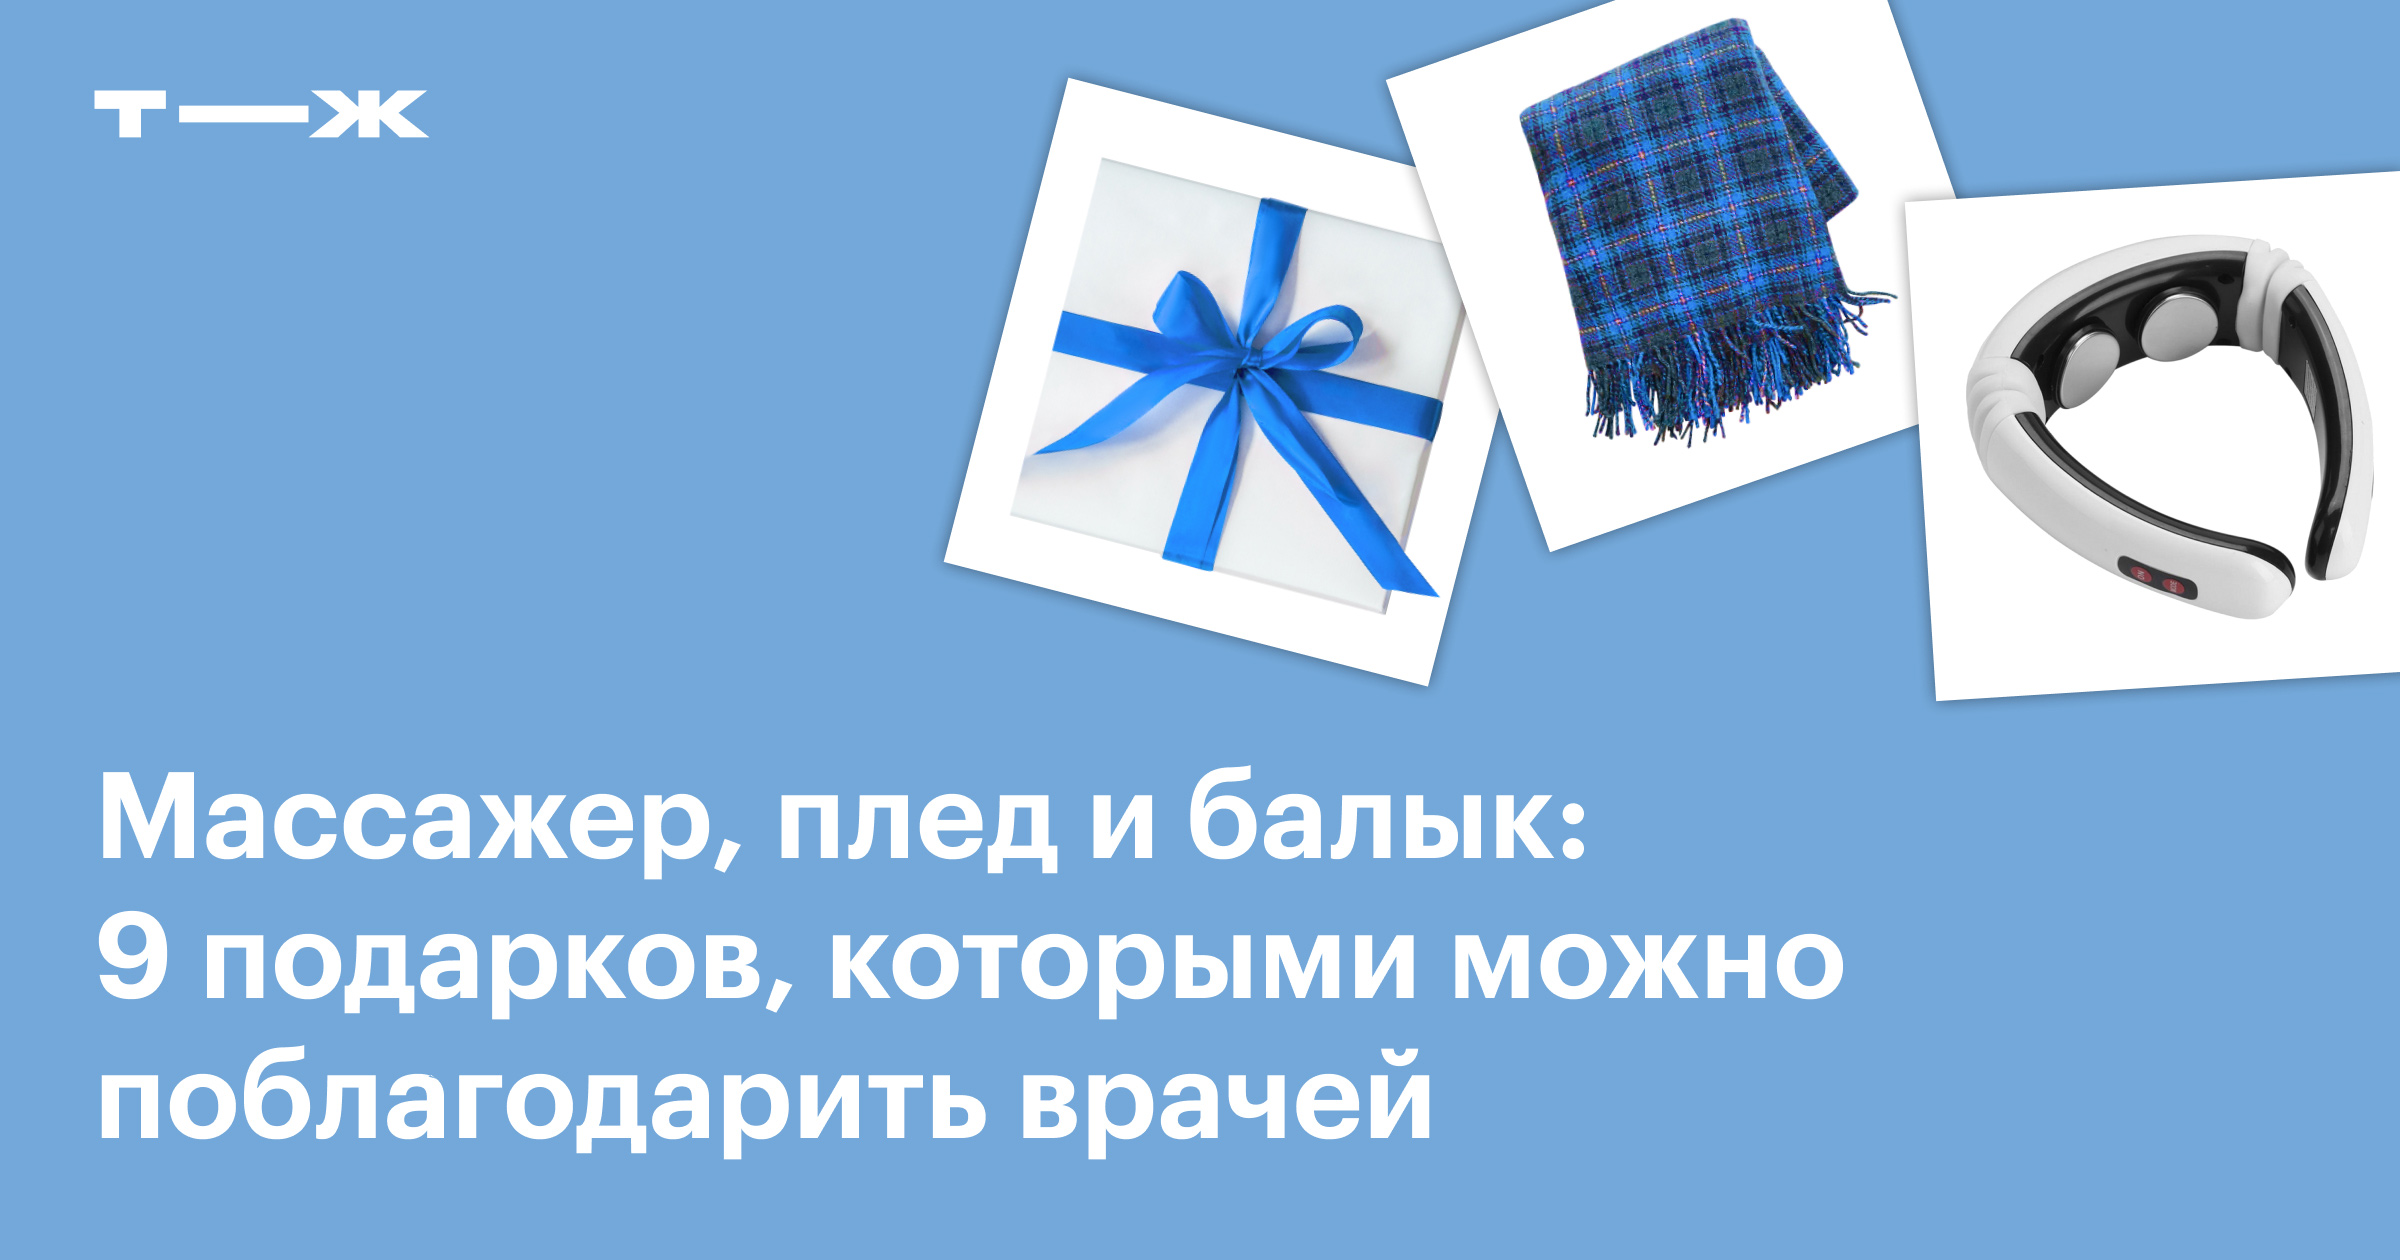 Подарки для врача купить в Москве - интернет магазин оригинальных сувениров Русь Великая